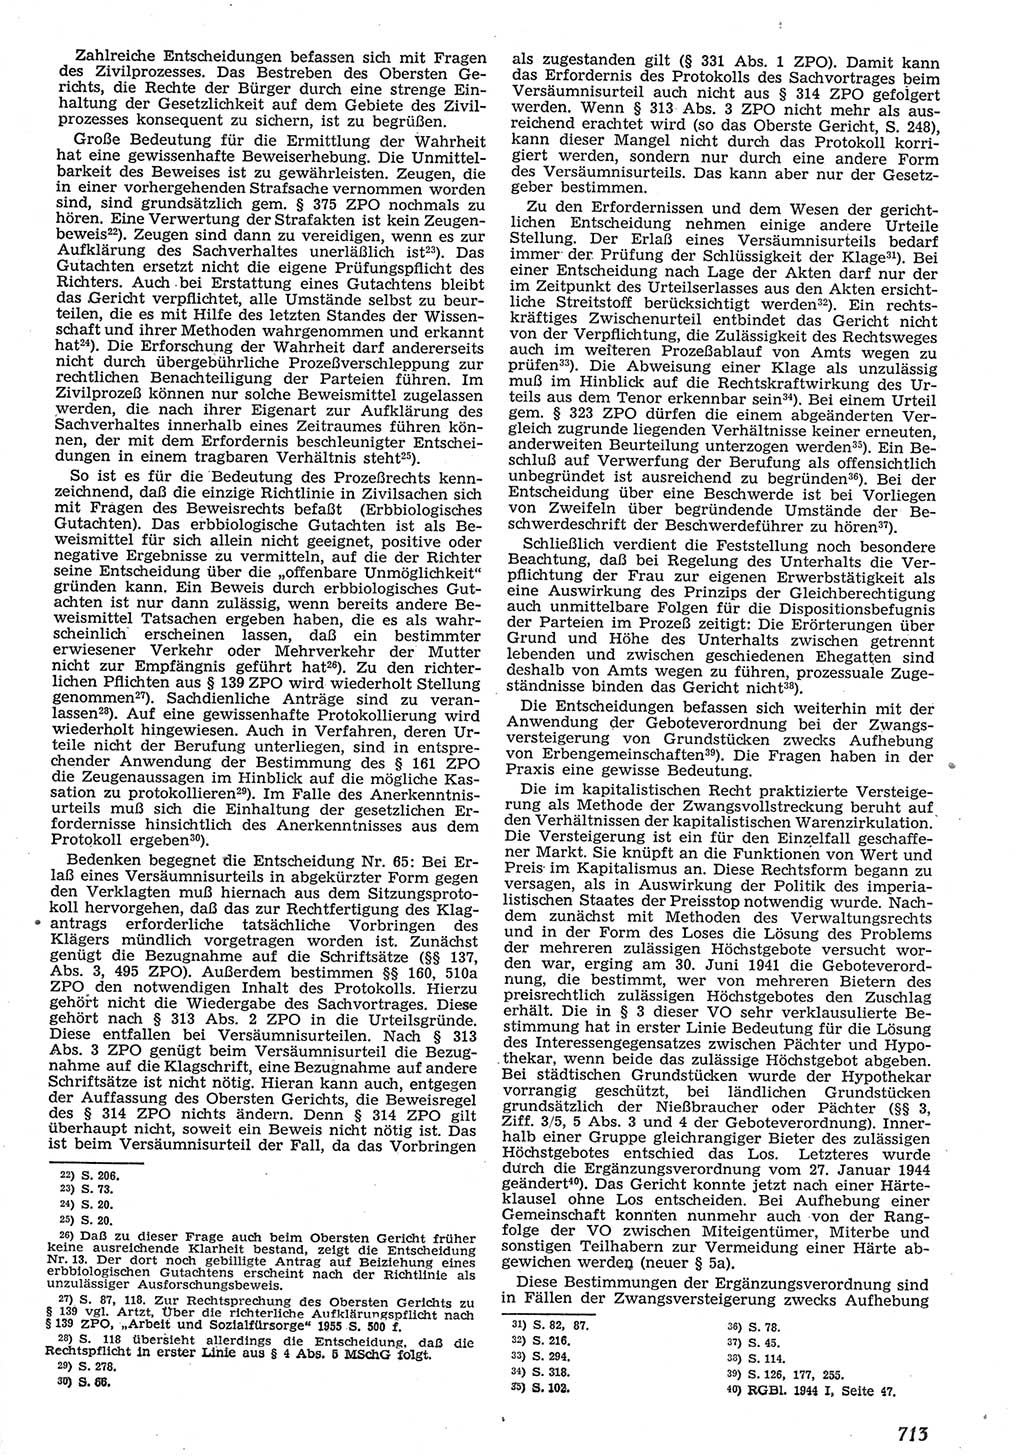 Neue Justiz (NJ), Zeitschrift für Recht und Rechtswissenschaft [Deutsche Demokratische Republik (DDR)], 10. Jahrgang 1956, Seite 713 (NJ DDR 1956, S. 713)